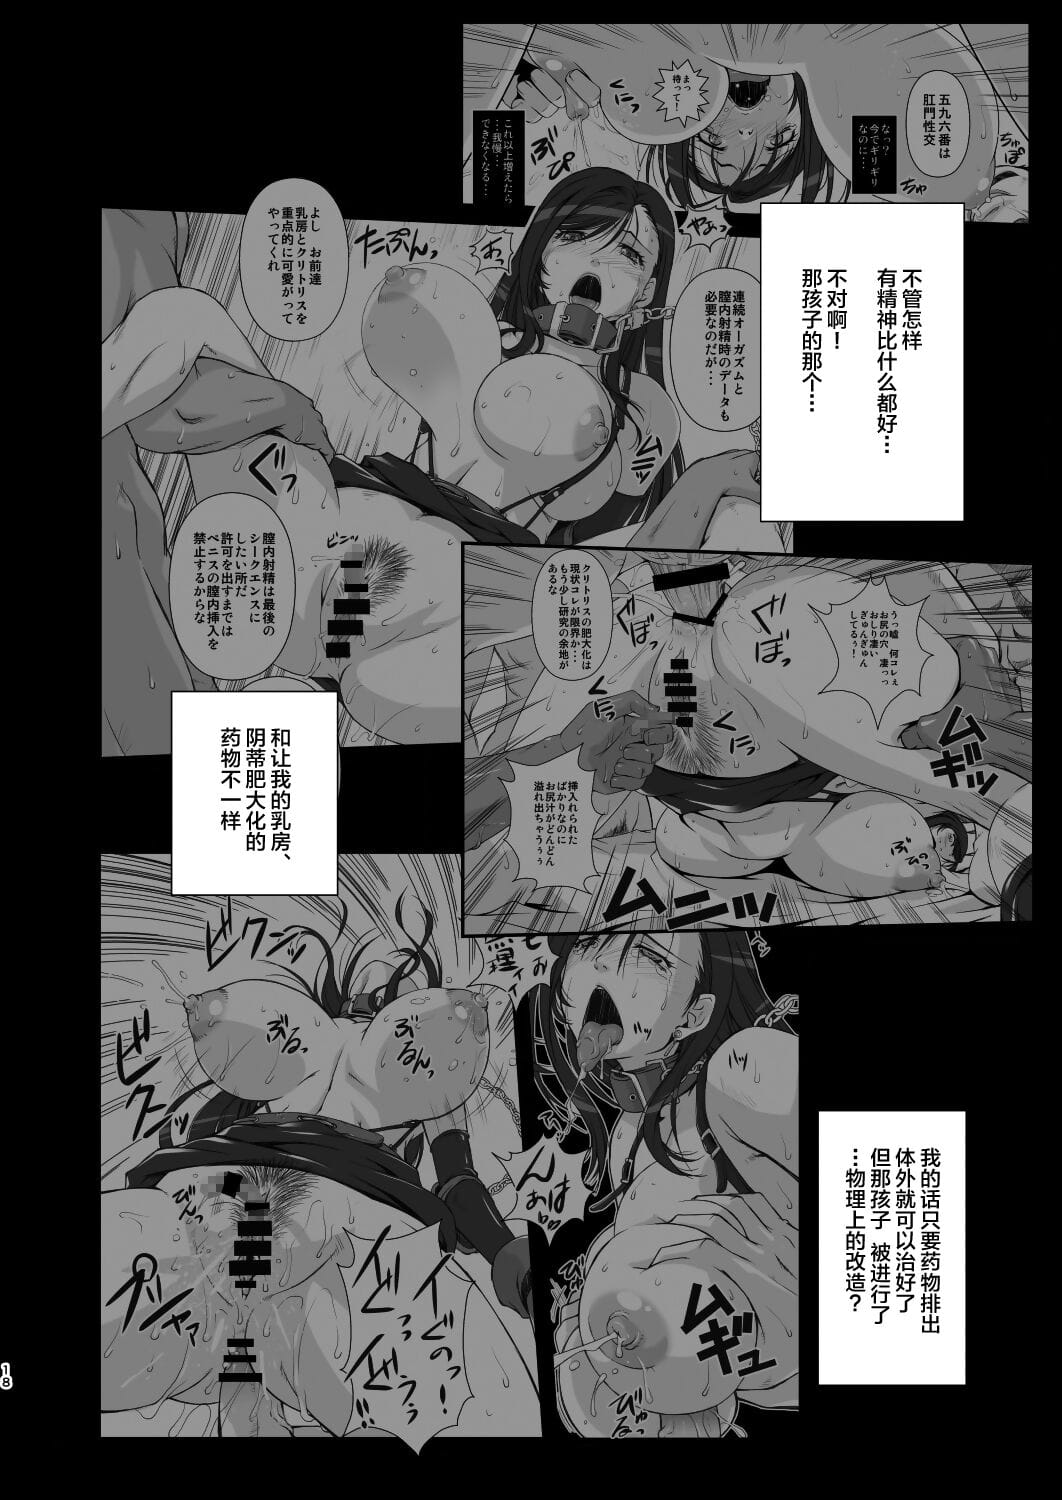 t&y 综合 page 1